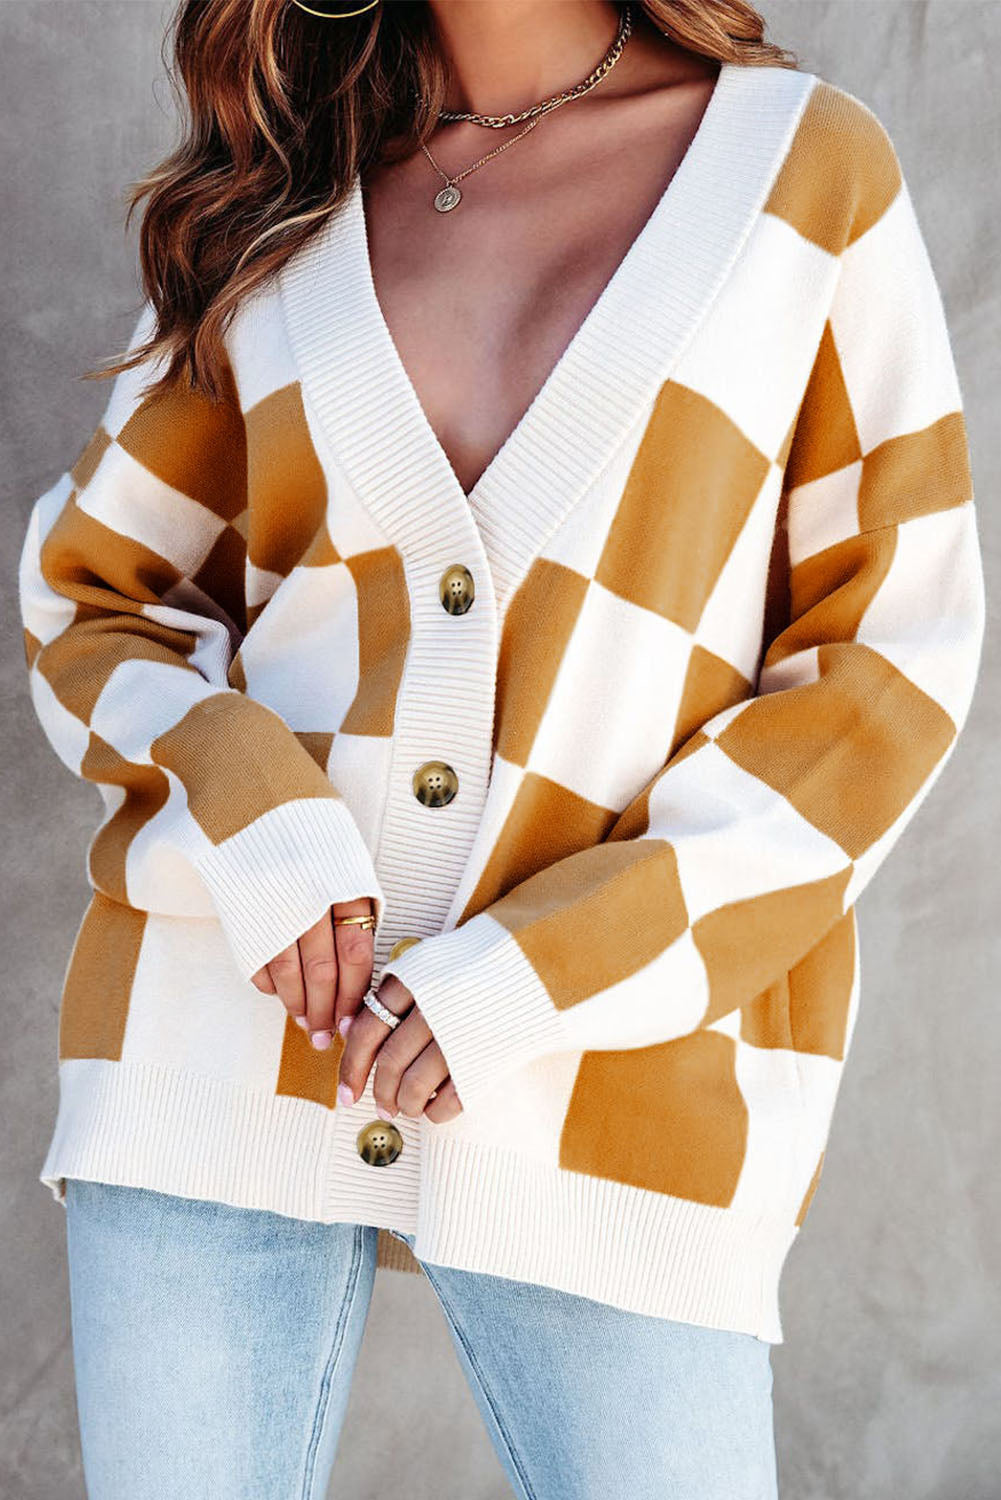 Brauner Pullover-Cardigan mit Knopfleiste und kontrastierendem Karomuster